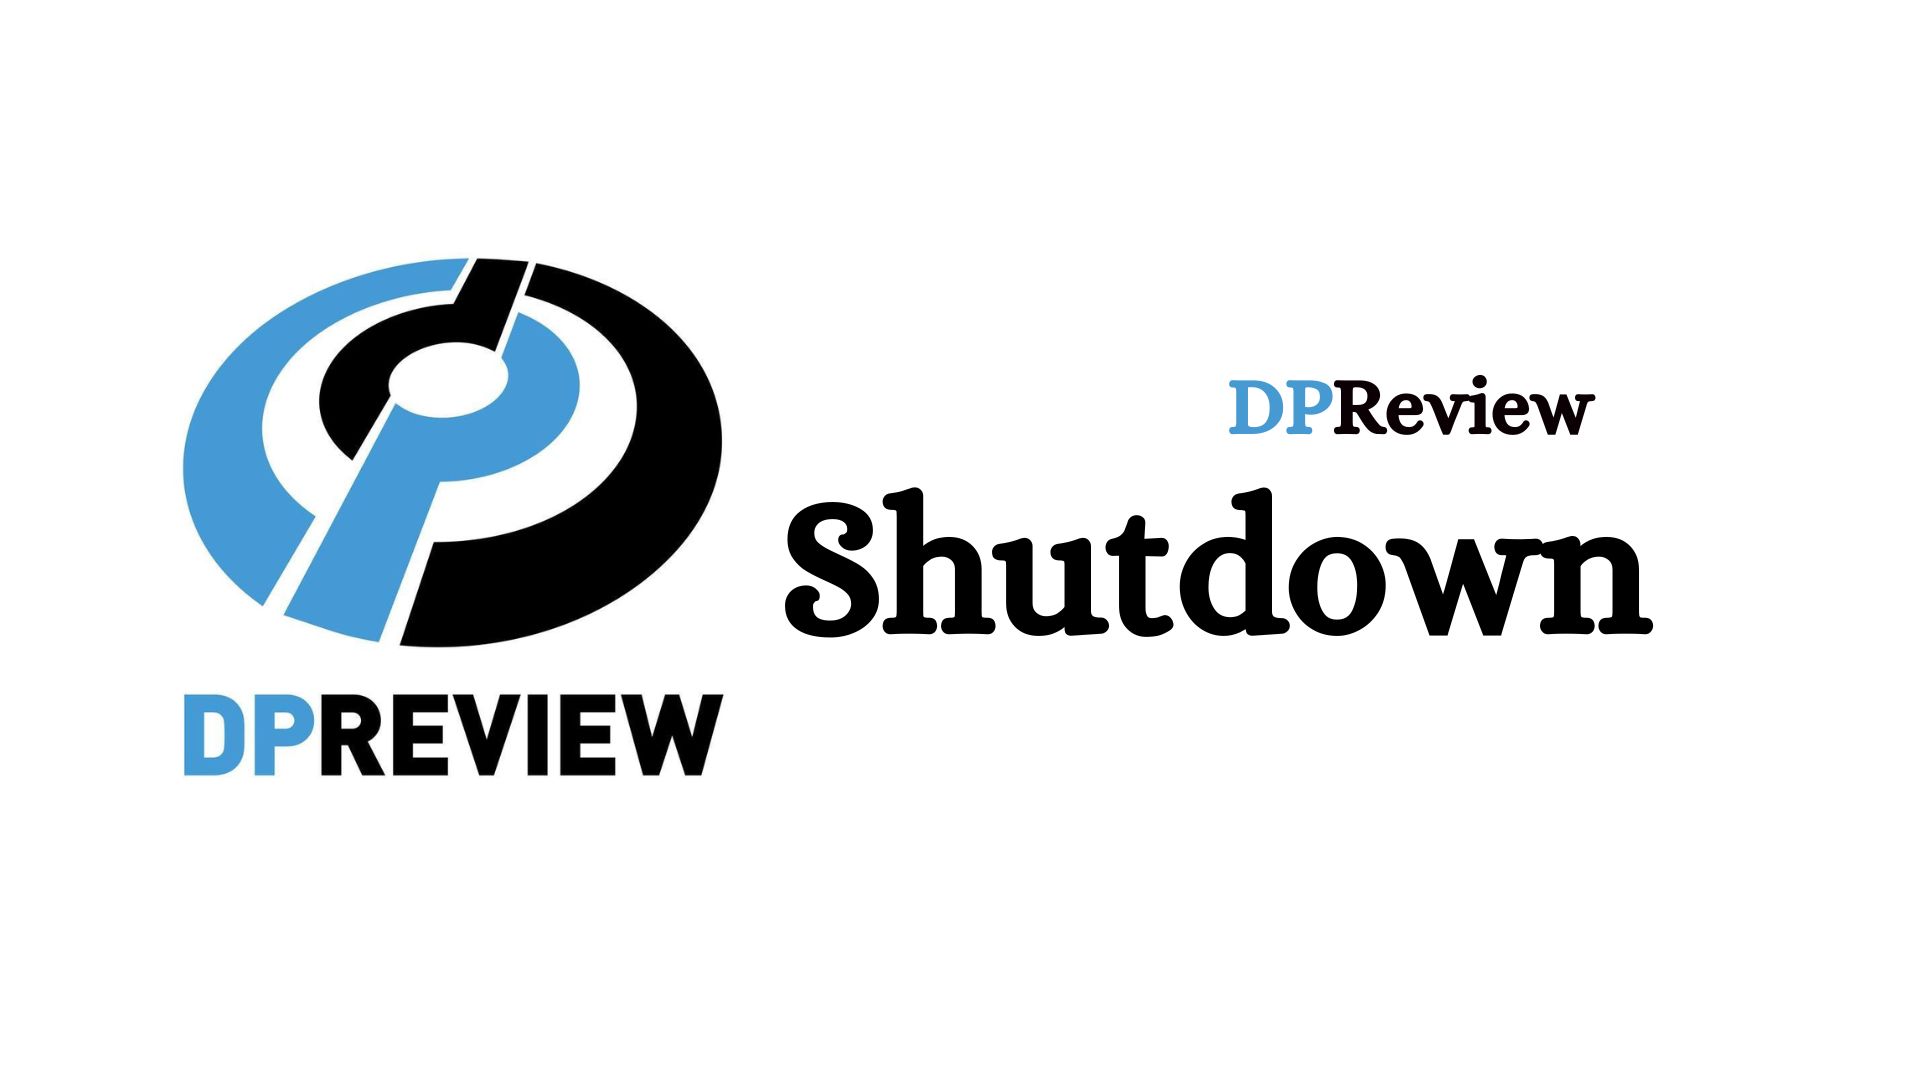 DPReview shutdown